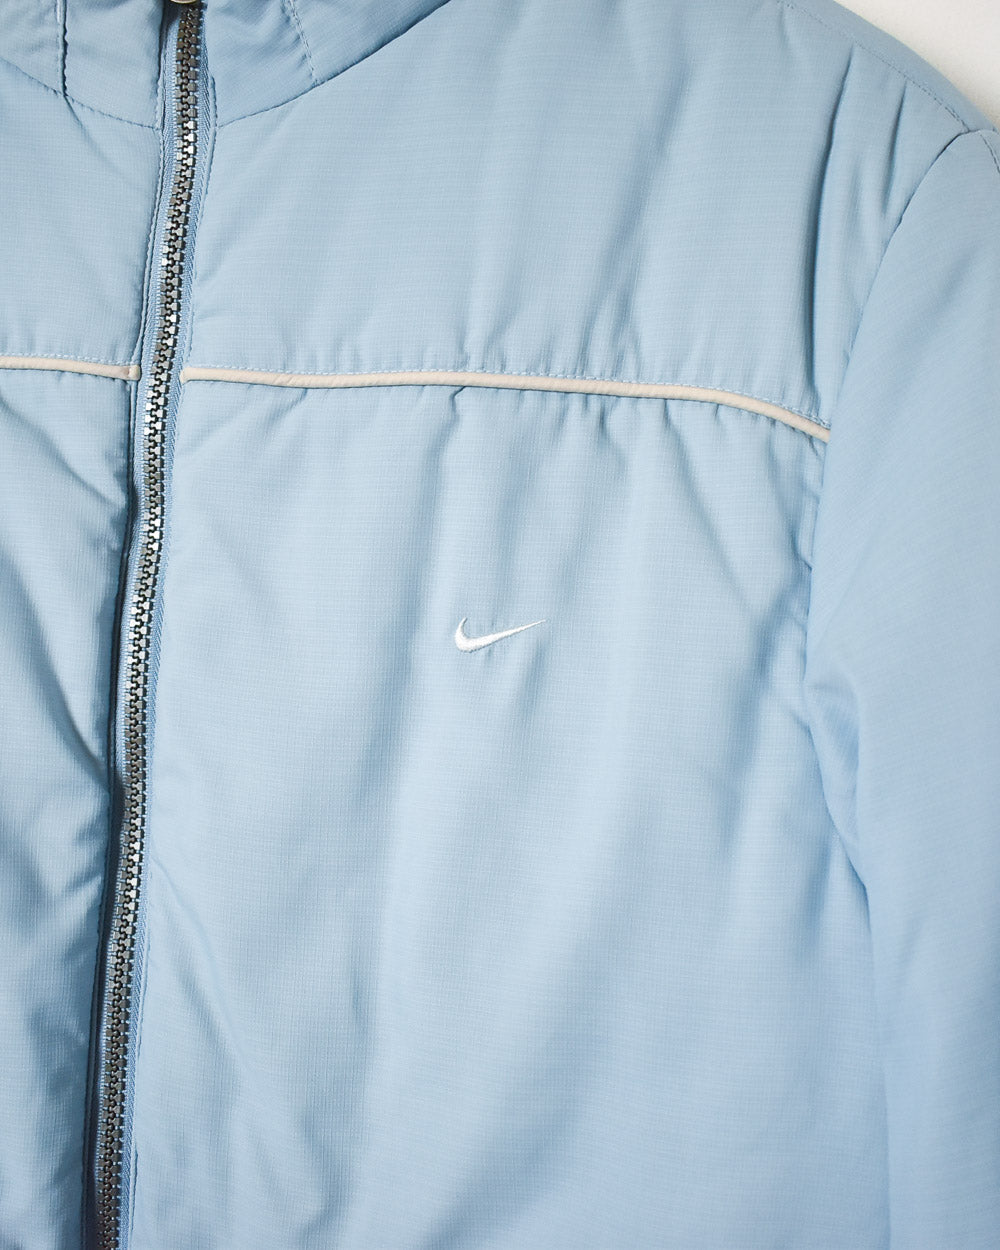 Neutral Nike Women's Reversible Hooded Jacket - Large women's